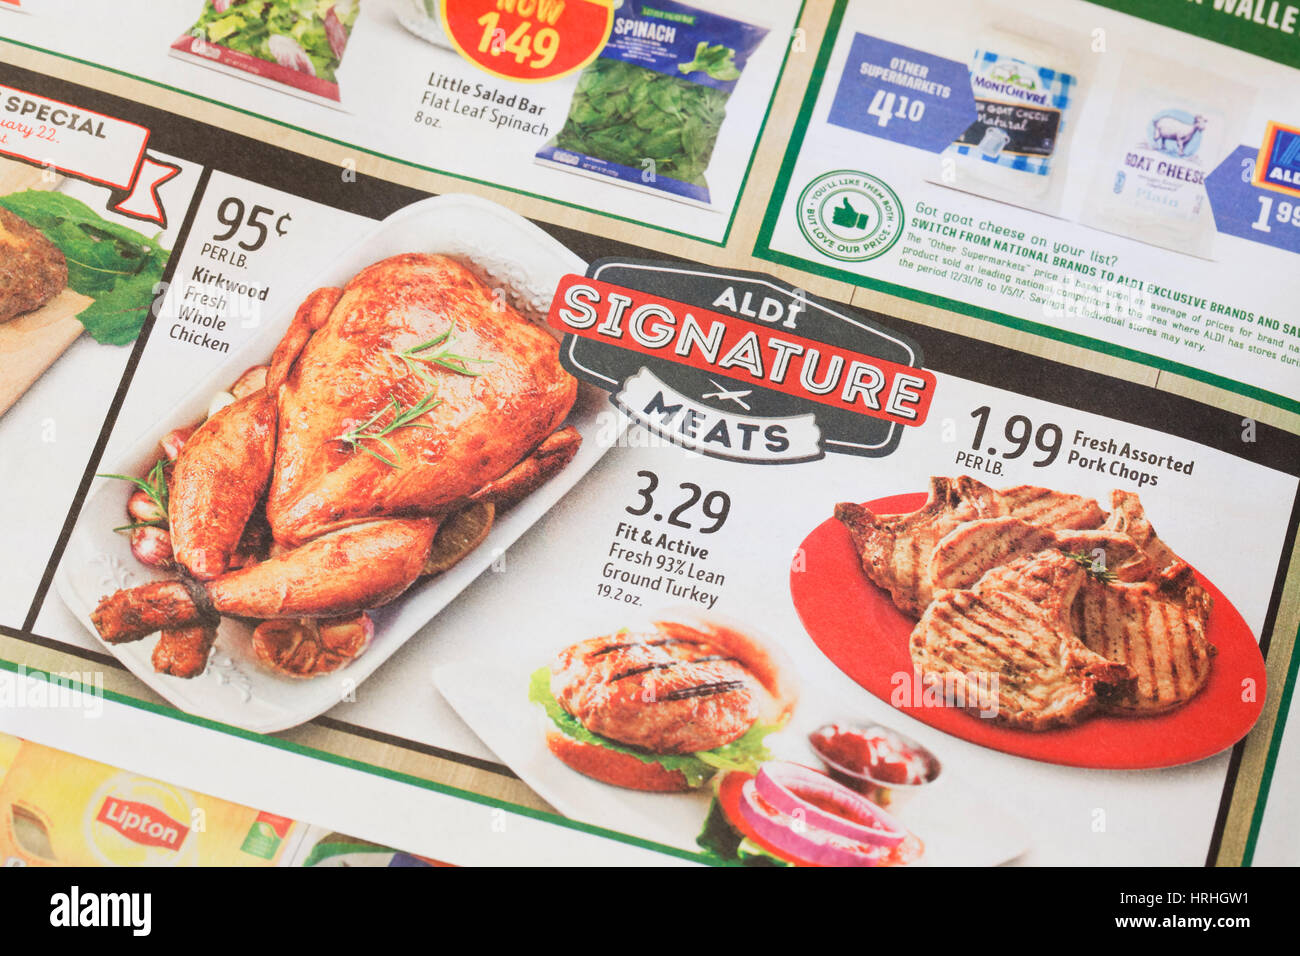 ALDI Supermarkt wöchentliche mailer Werbung closeup - USA Stockfoto